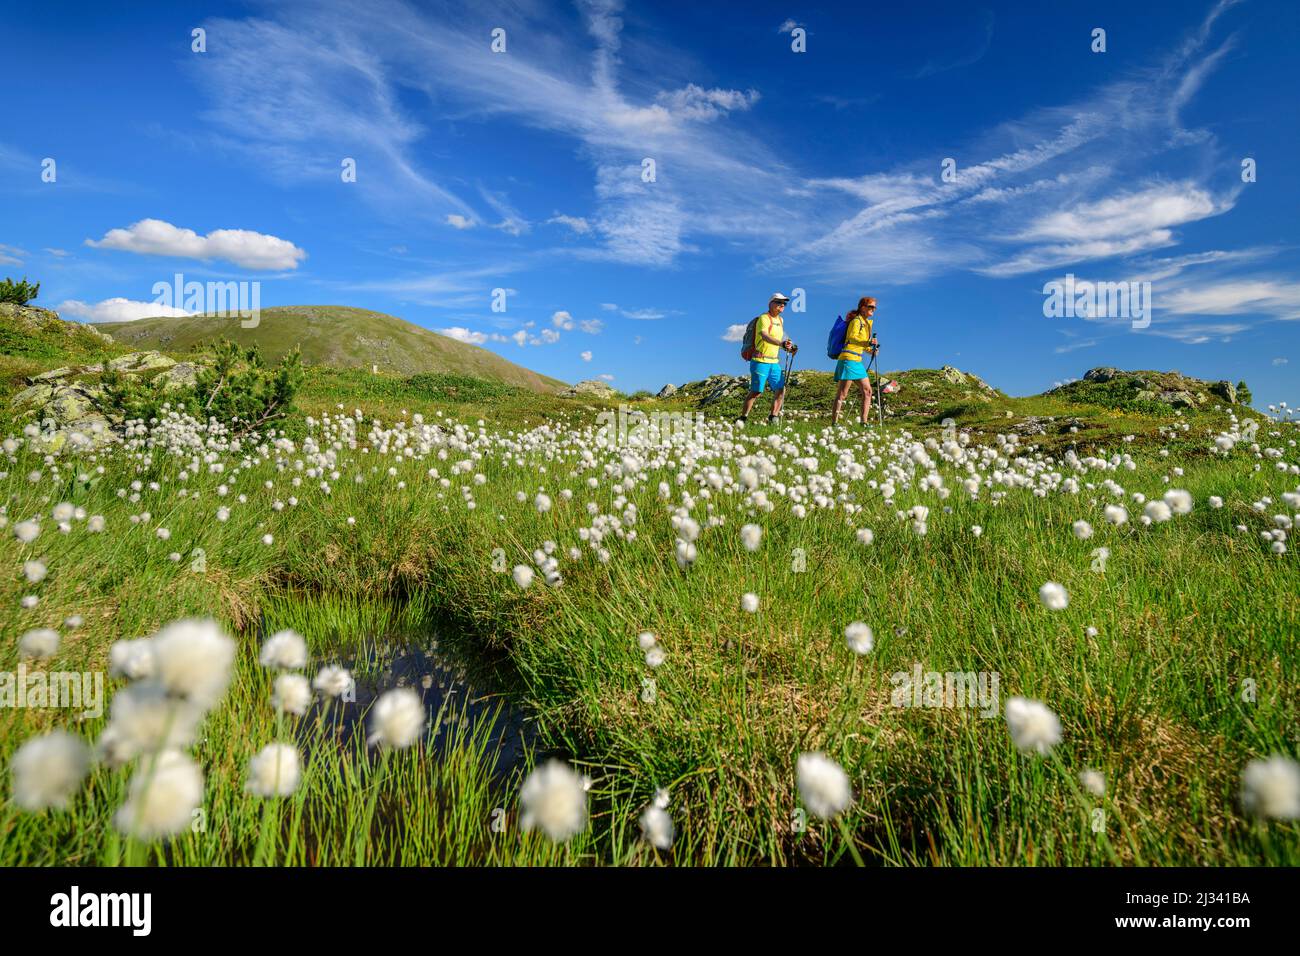 Uomo e donna che camminano attraverso prati con erba di cotone, Predigerstuhl, Nockberge, Nockberge-Trail, Unesco Biosphere Park Nockberge, Gurktal Alpi, Carinzia, Austria Foto Stock